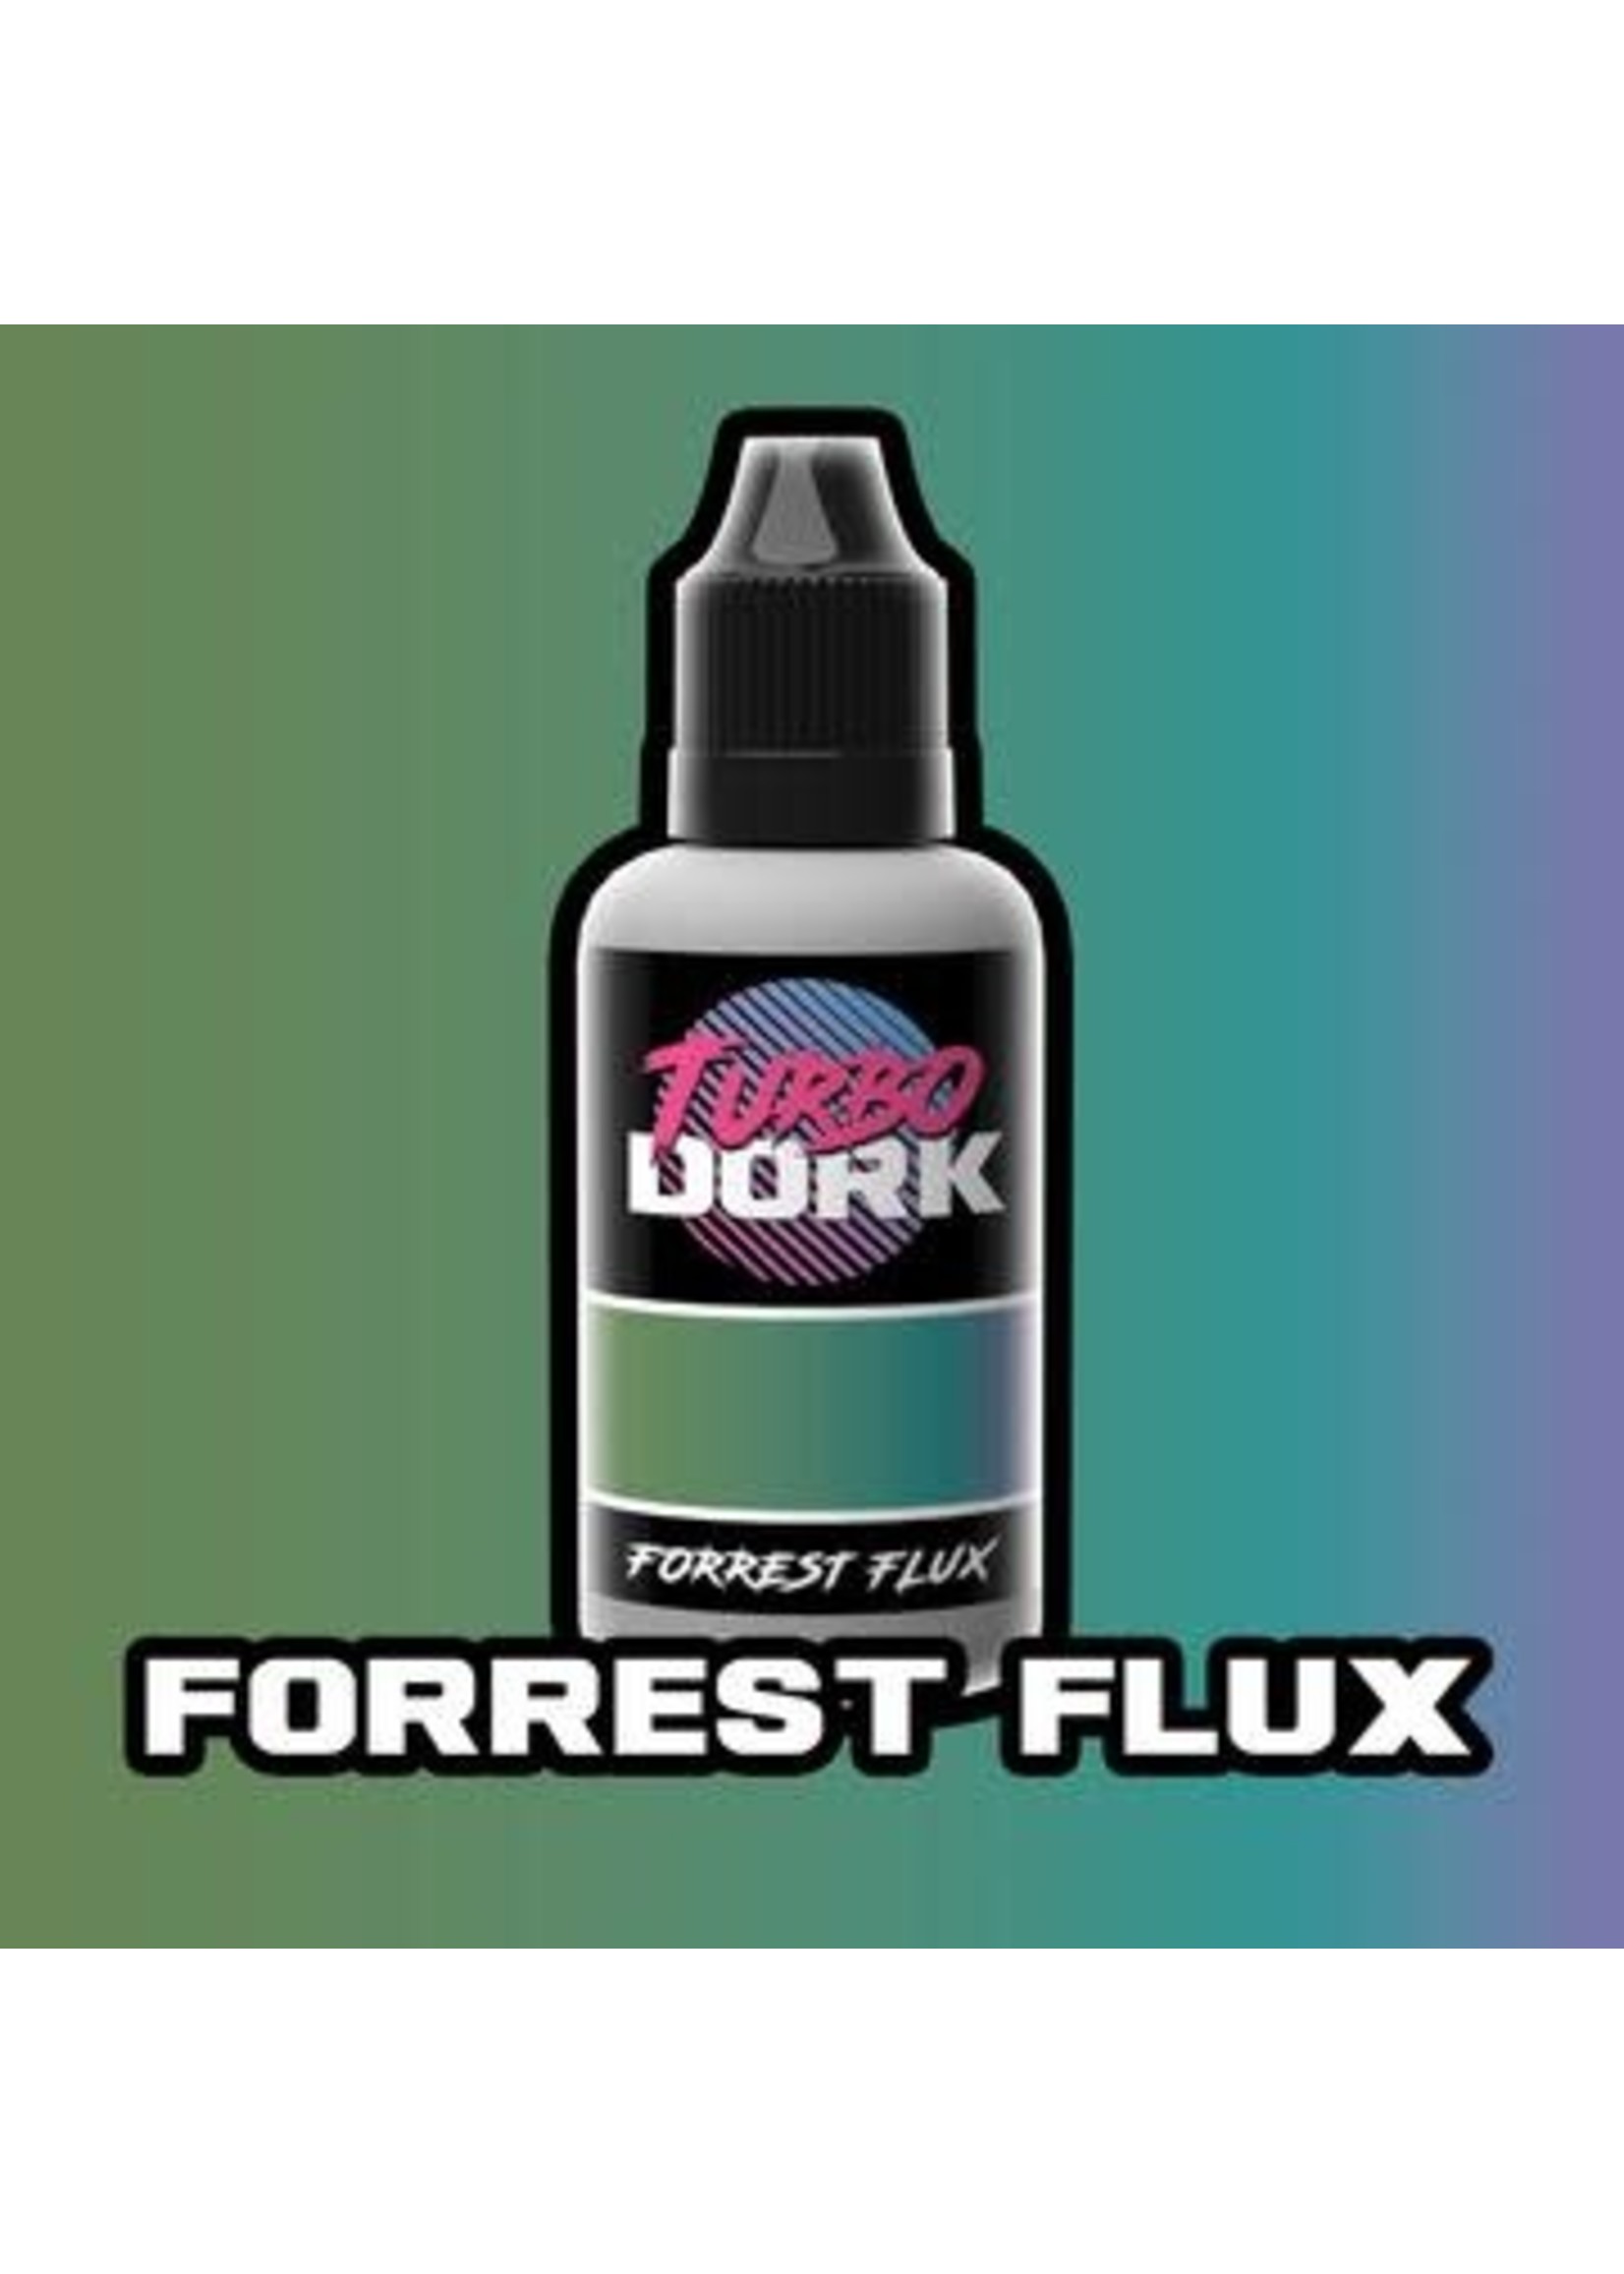 Turbo Dork Turbo Dork: Forrest Flux